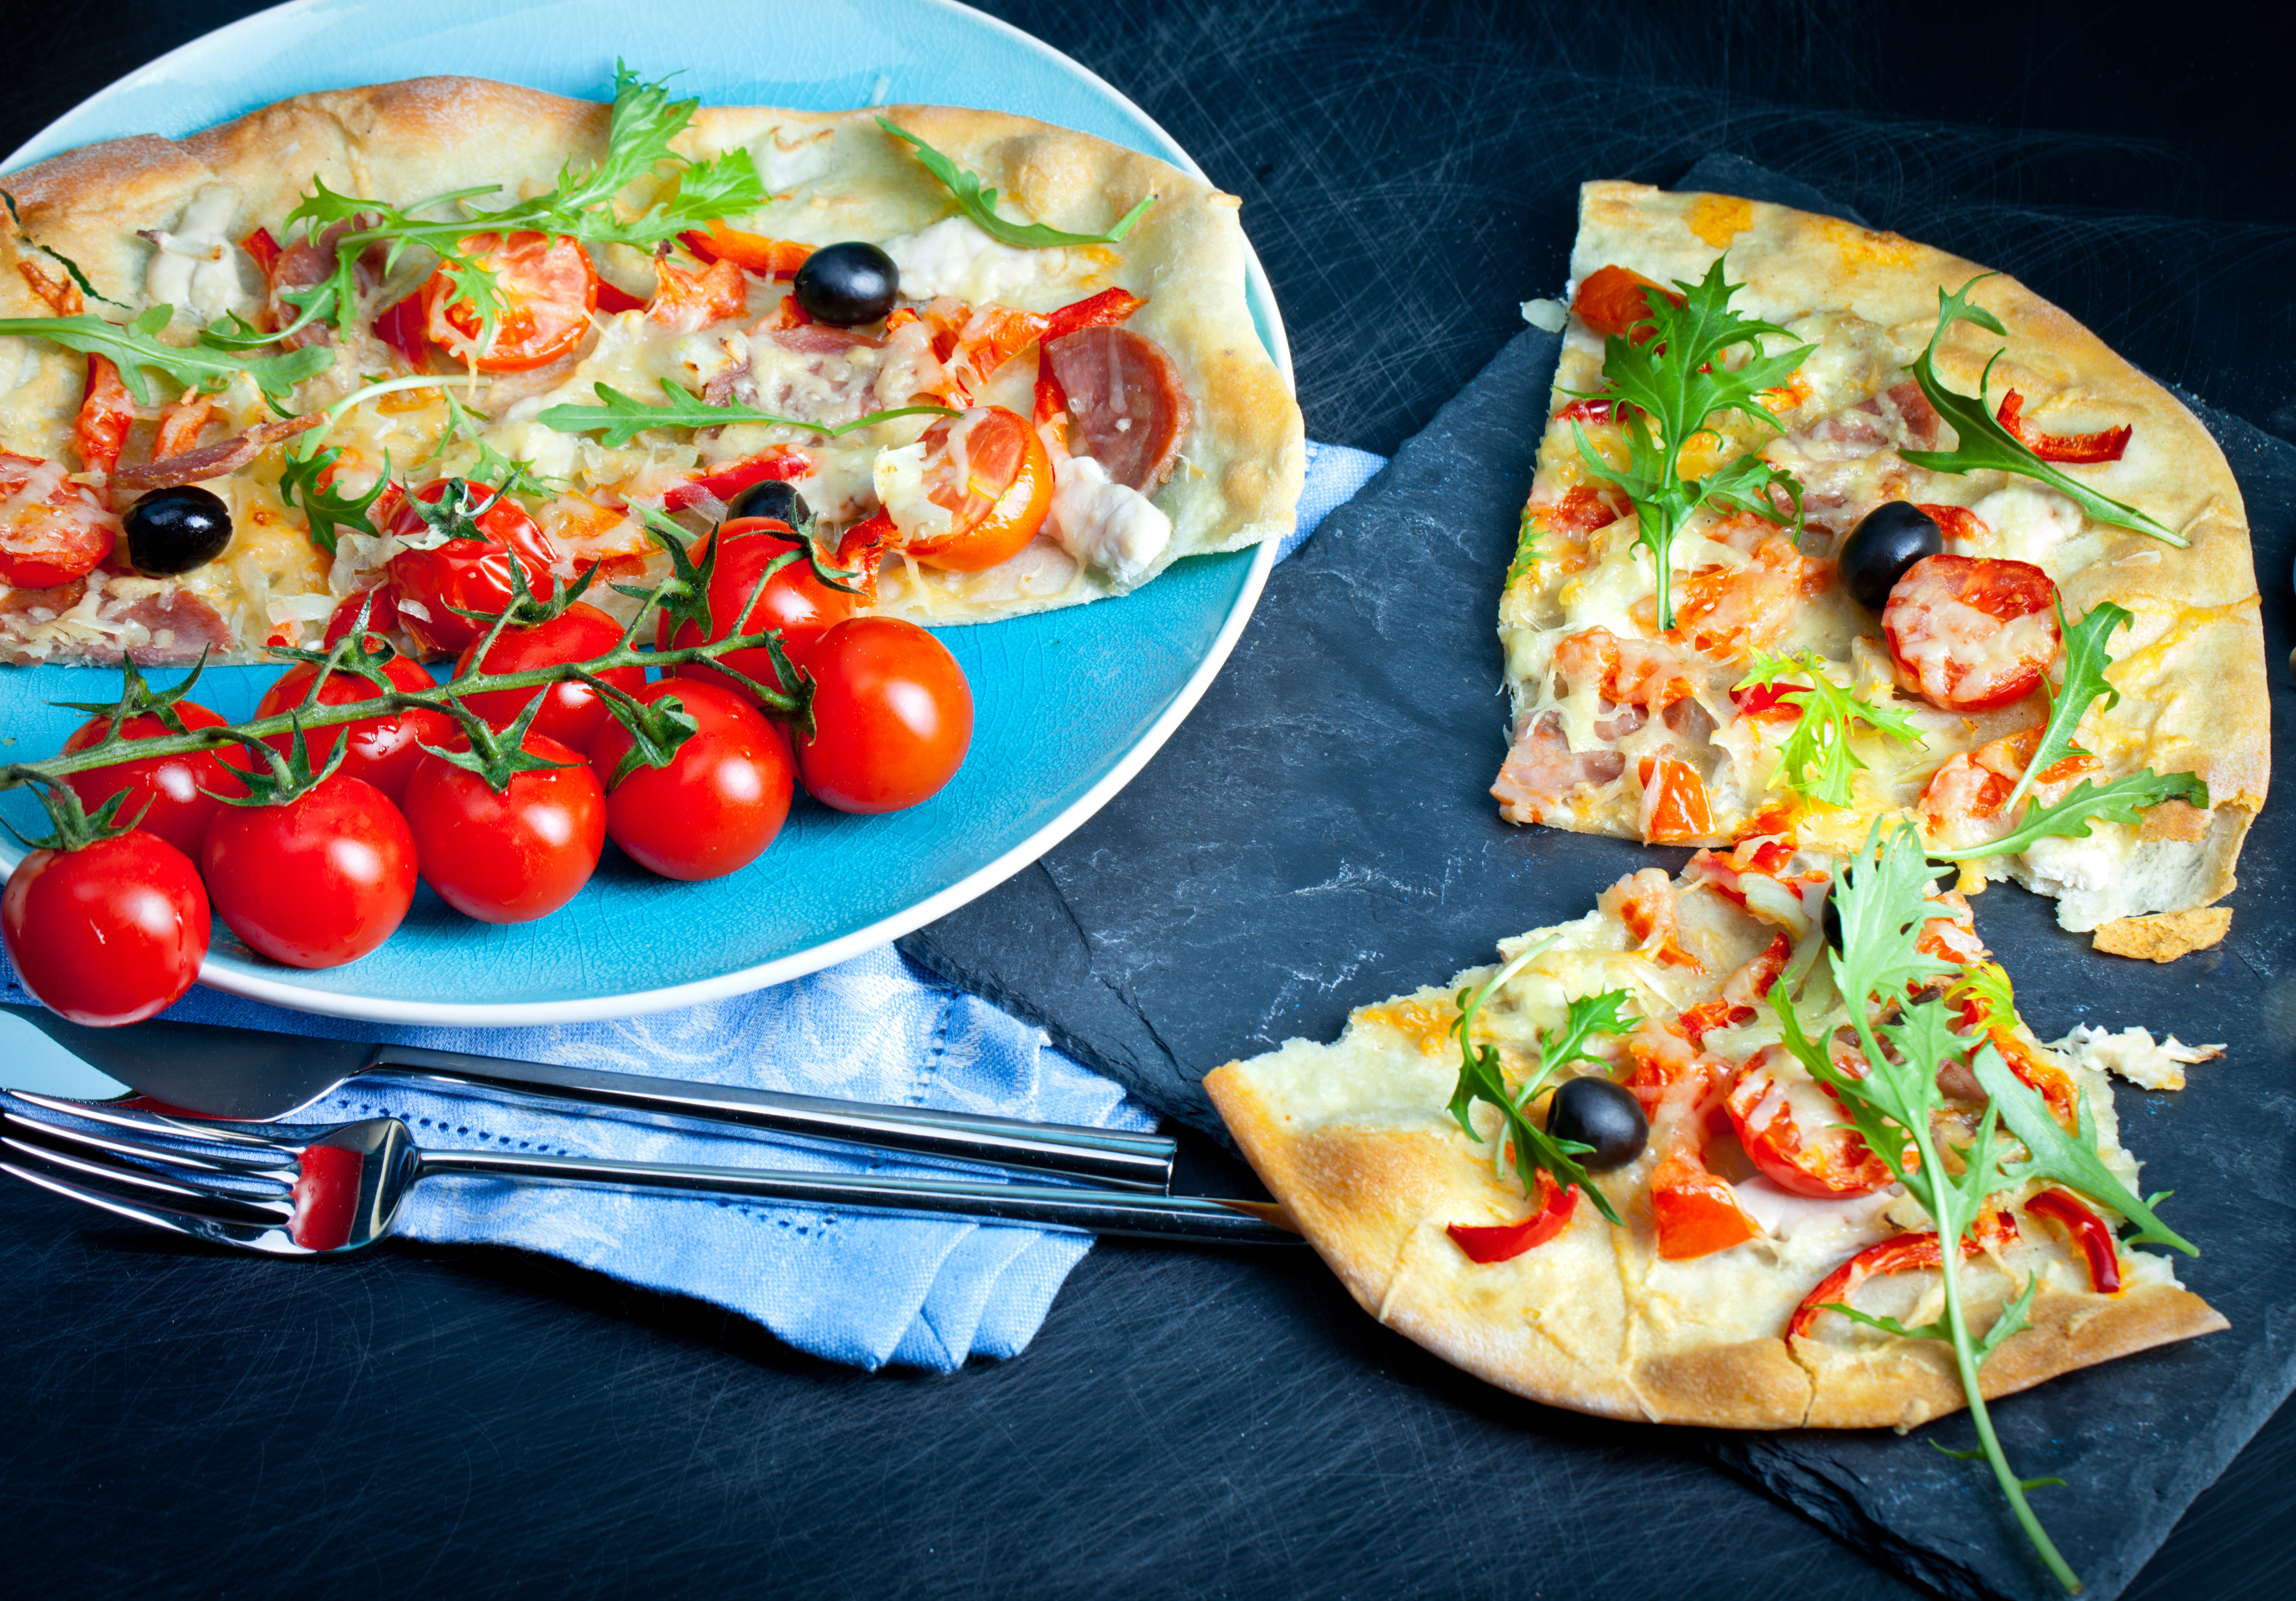 Descarga gratuita de fondo de pantalla para móvil de Pizza, Tomate, Alimento, Bodegón.